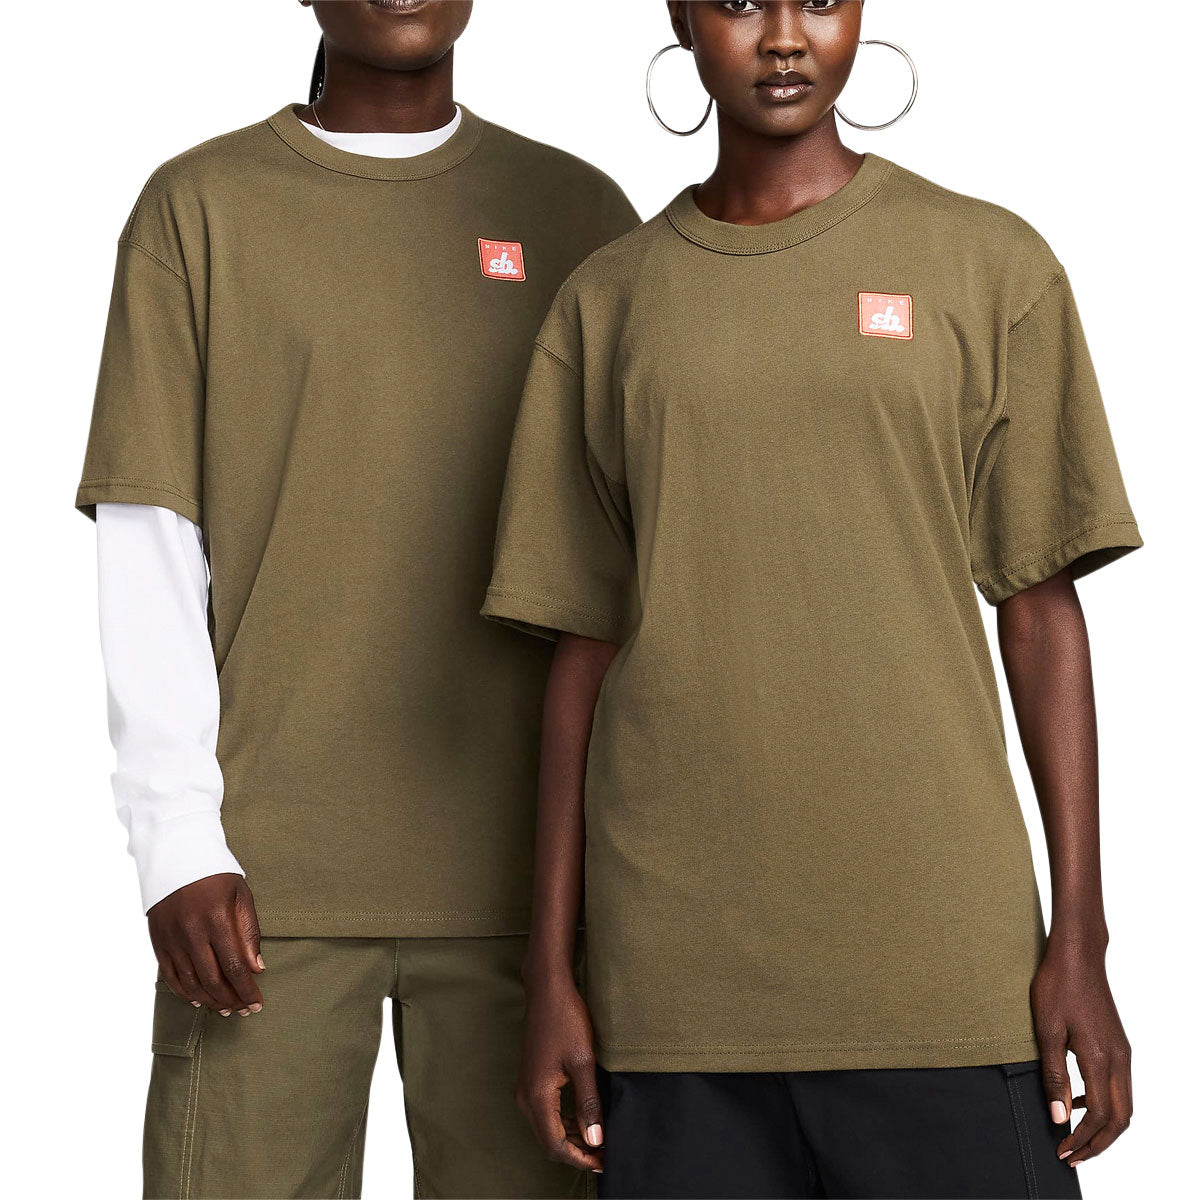 Nike SB Skate T-Shirt - Medium Olive image 2